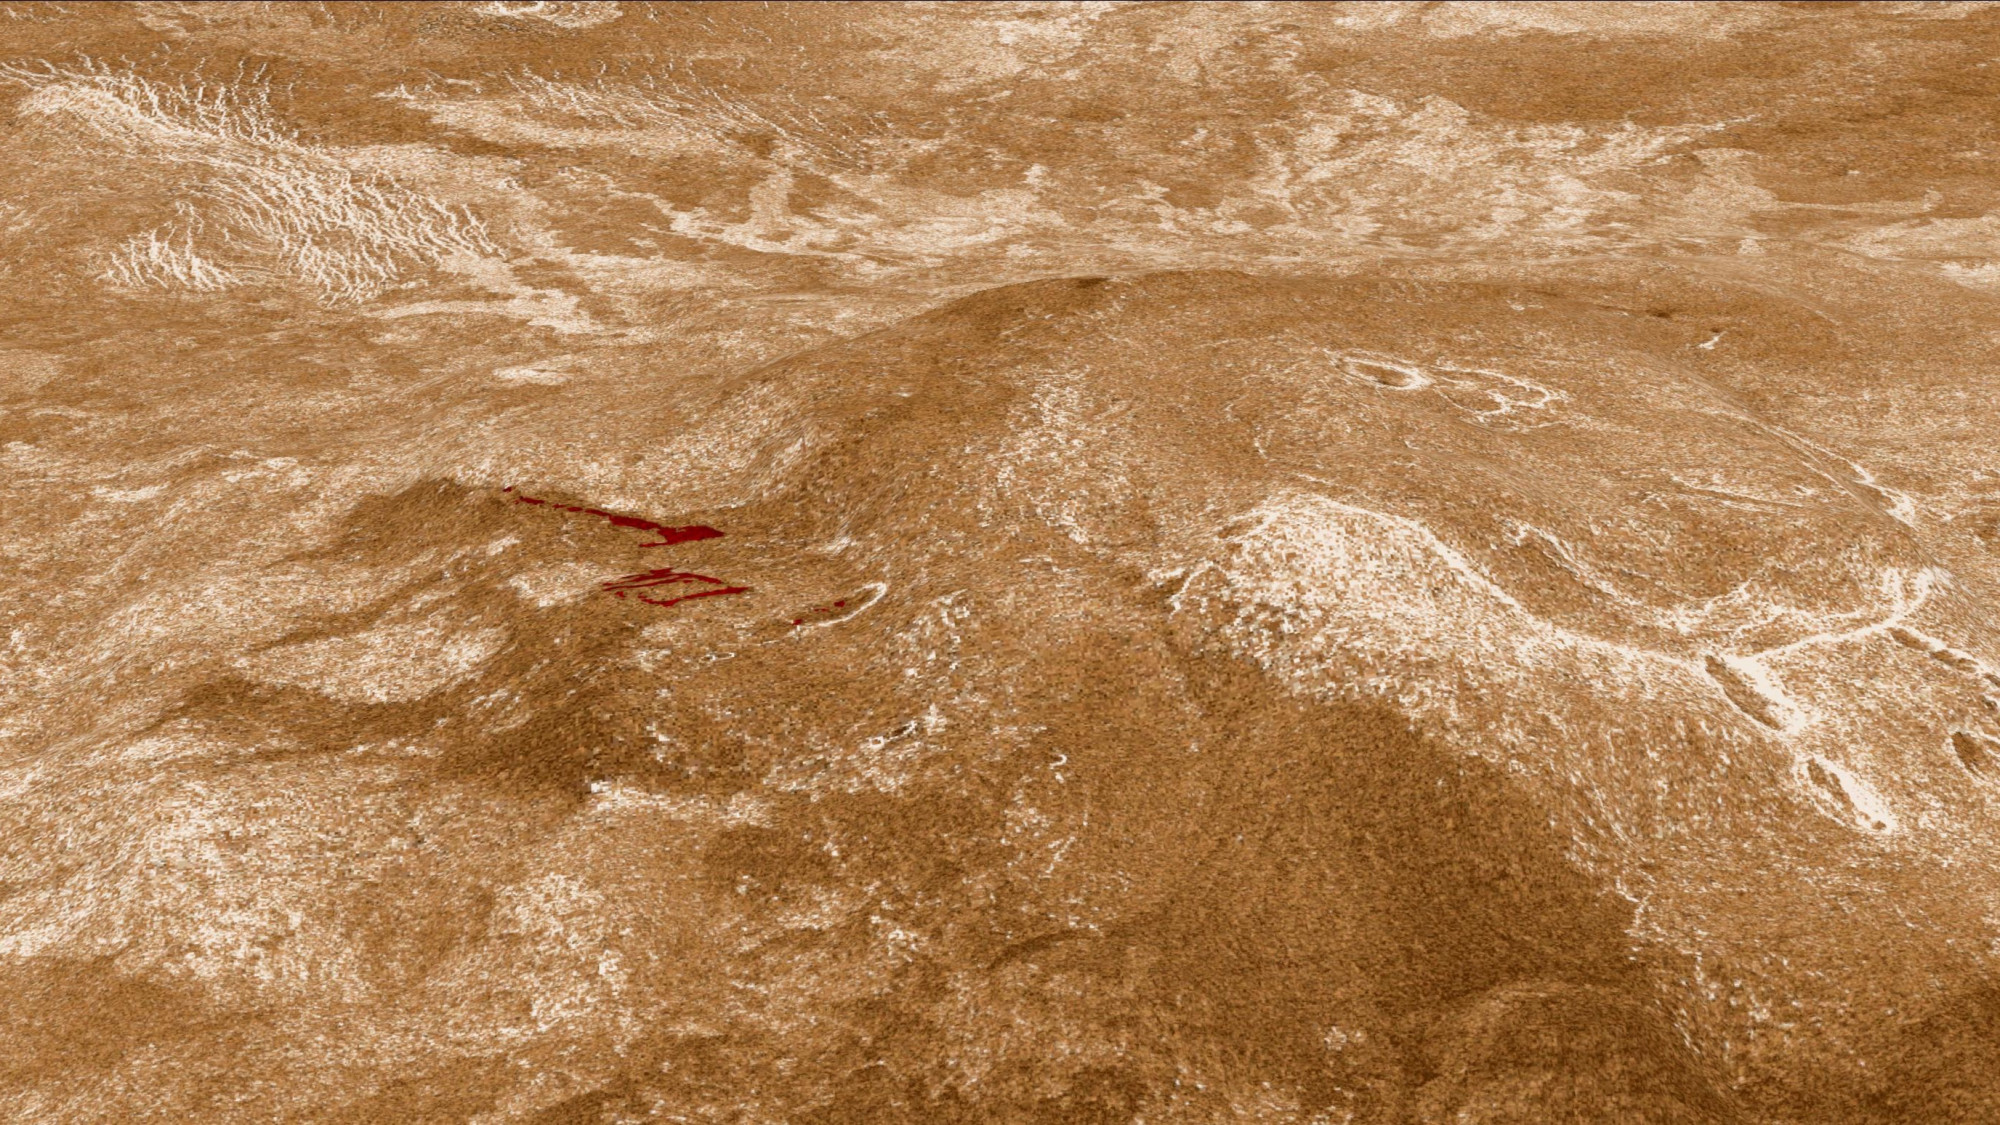 Közelmúltbeli lávafolyásokra bukkantak a Vénuszon